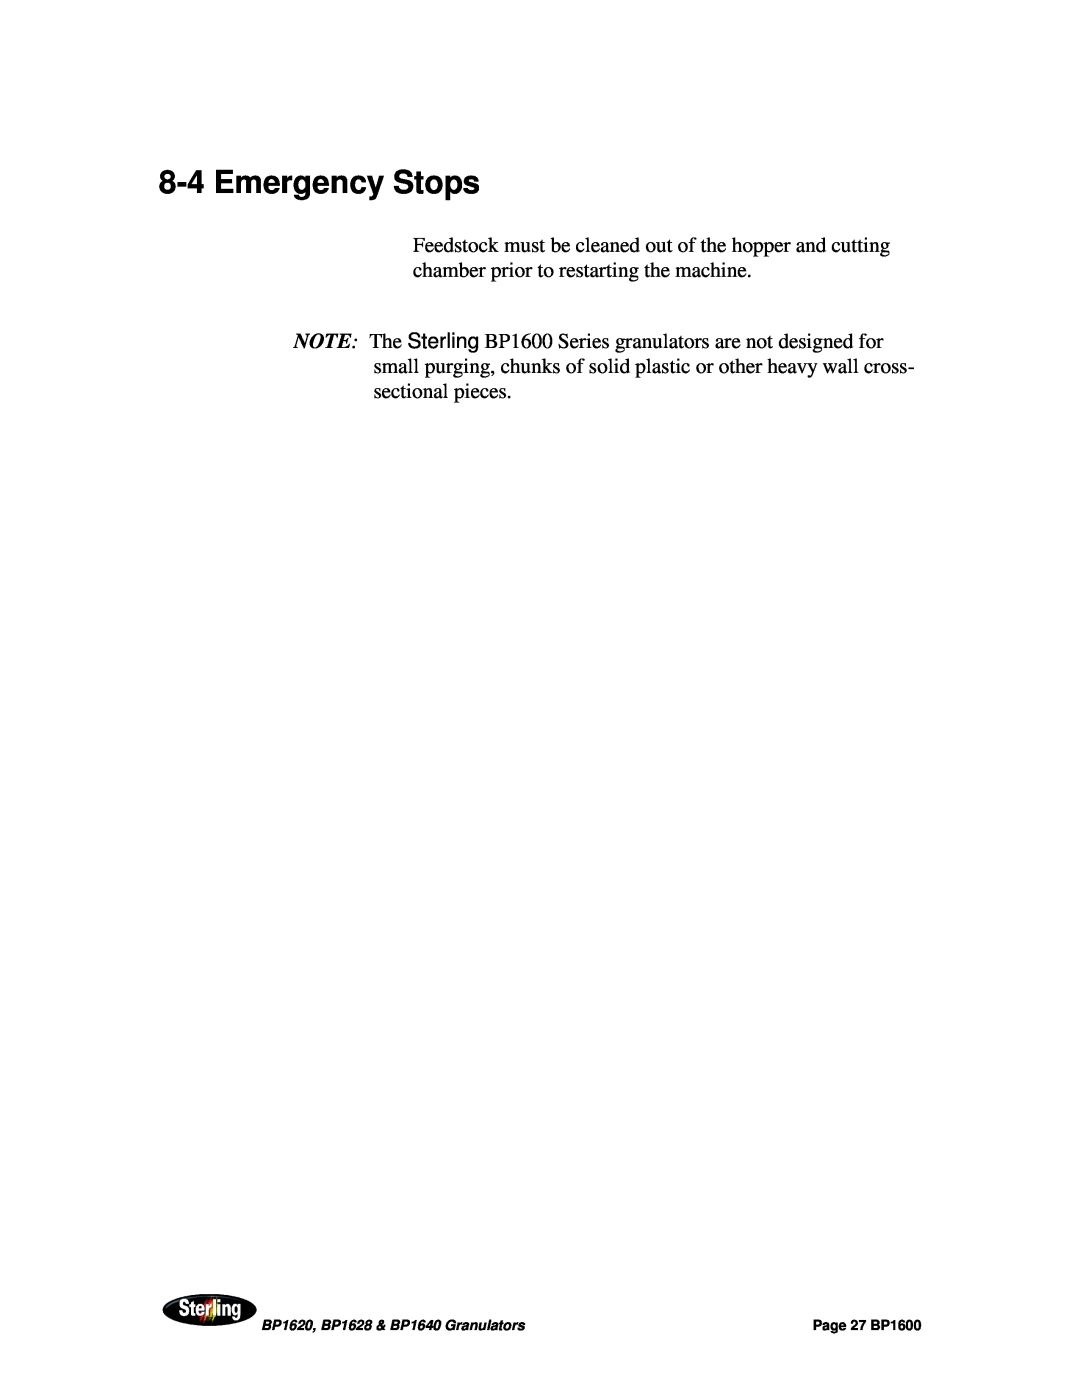 Sterling BP1628, BP1640, BP1620 installation manual 8-4Emergency Stops, Page 27 BP1600 